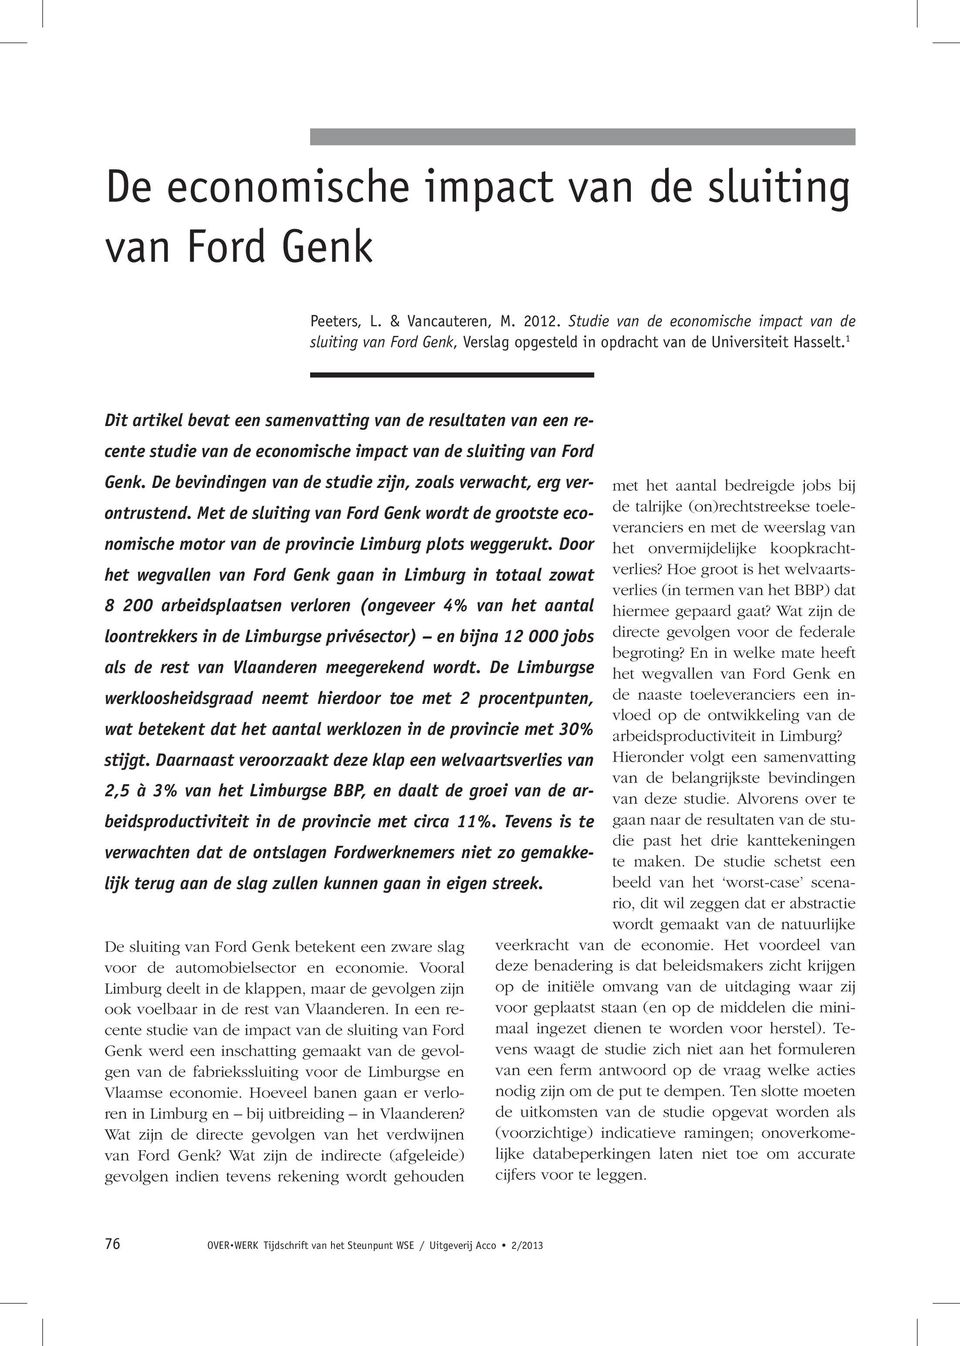 1 Dit artikel bevat een samenvatting van de resultaten van een recente studie van de economische impact van de sluiting van Ford Genk.